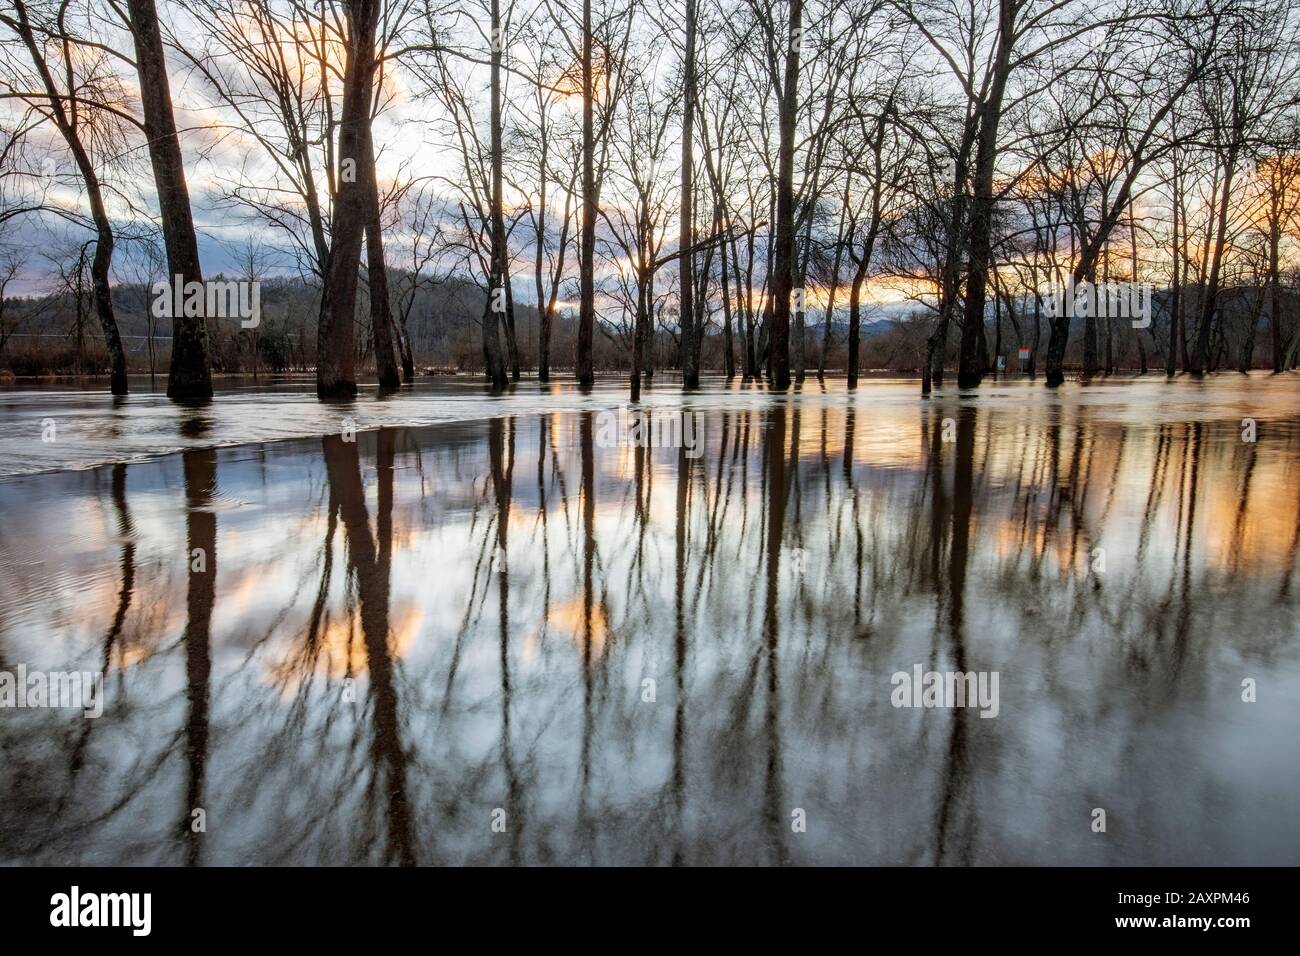 Überschwemmte Waldspiegelungen bei Sonnenuntergang, die durch den französischen Broad River entstanden sind, der nach starken Regenfällen seine Ufer überflutete. Hap Simpson Park, Brevard, North Carol Stockfoto